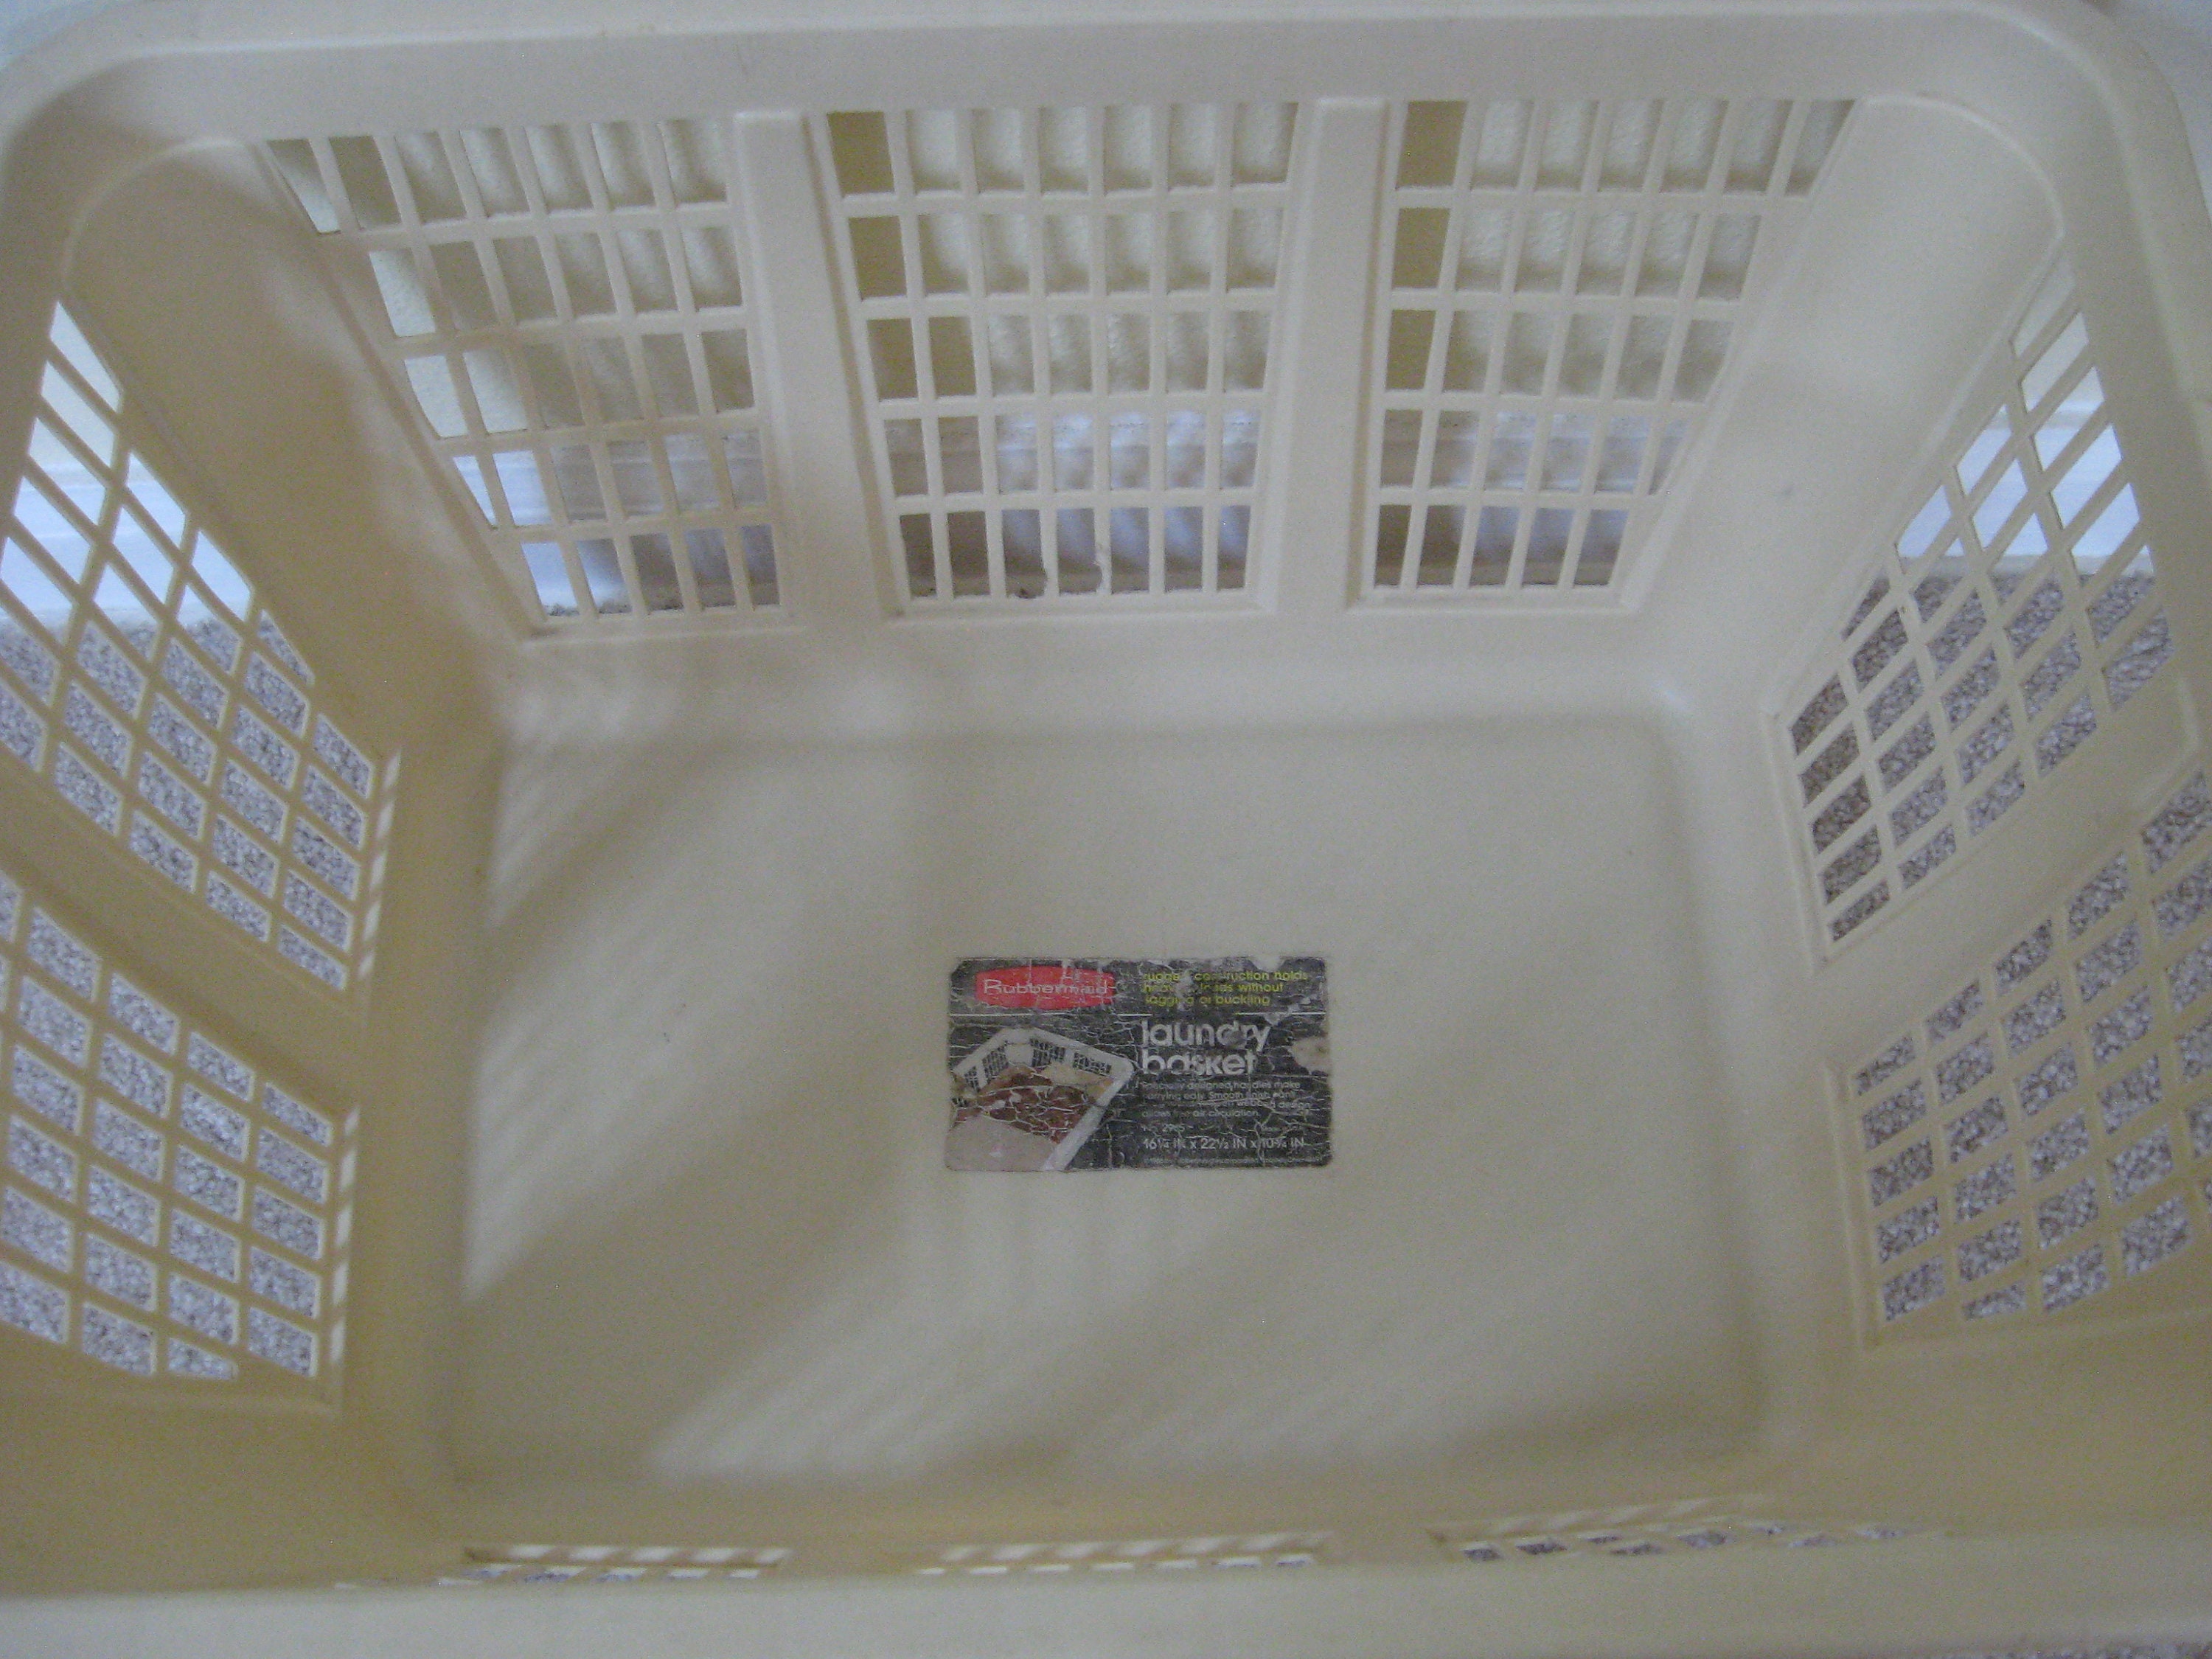 2 Vintage Rubbermaid Square Laundry Basket #2972 Clothes Hamper Movie prop  (Z1)